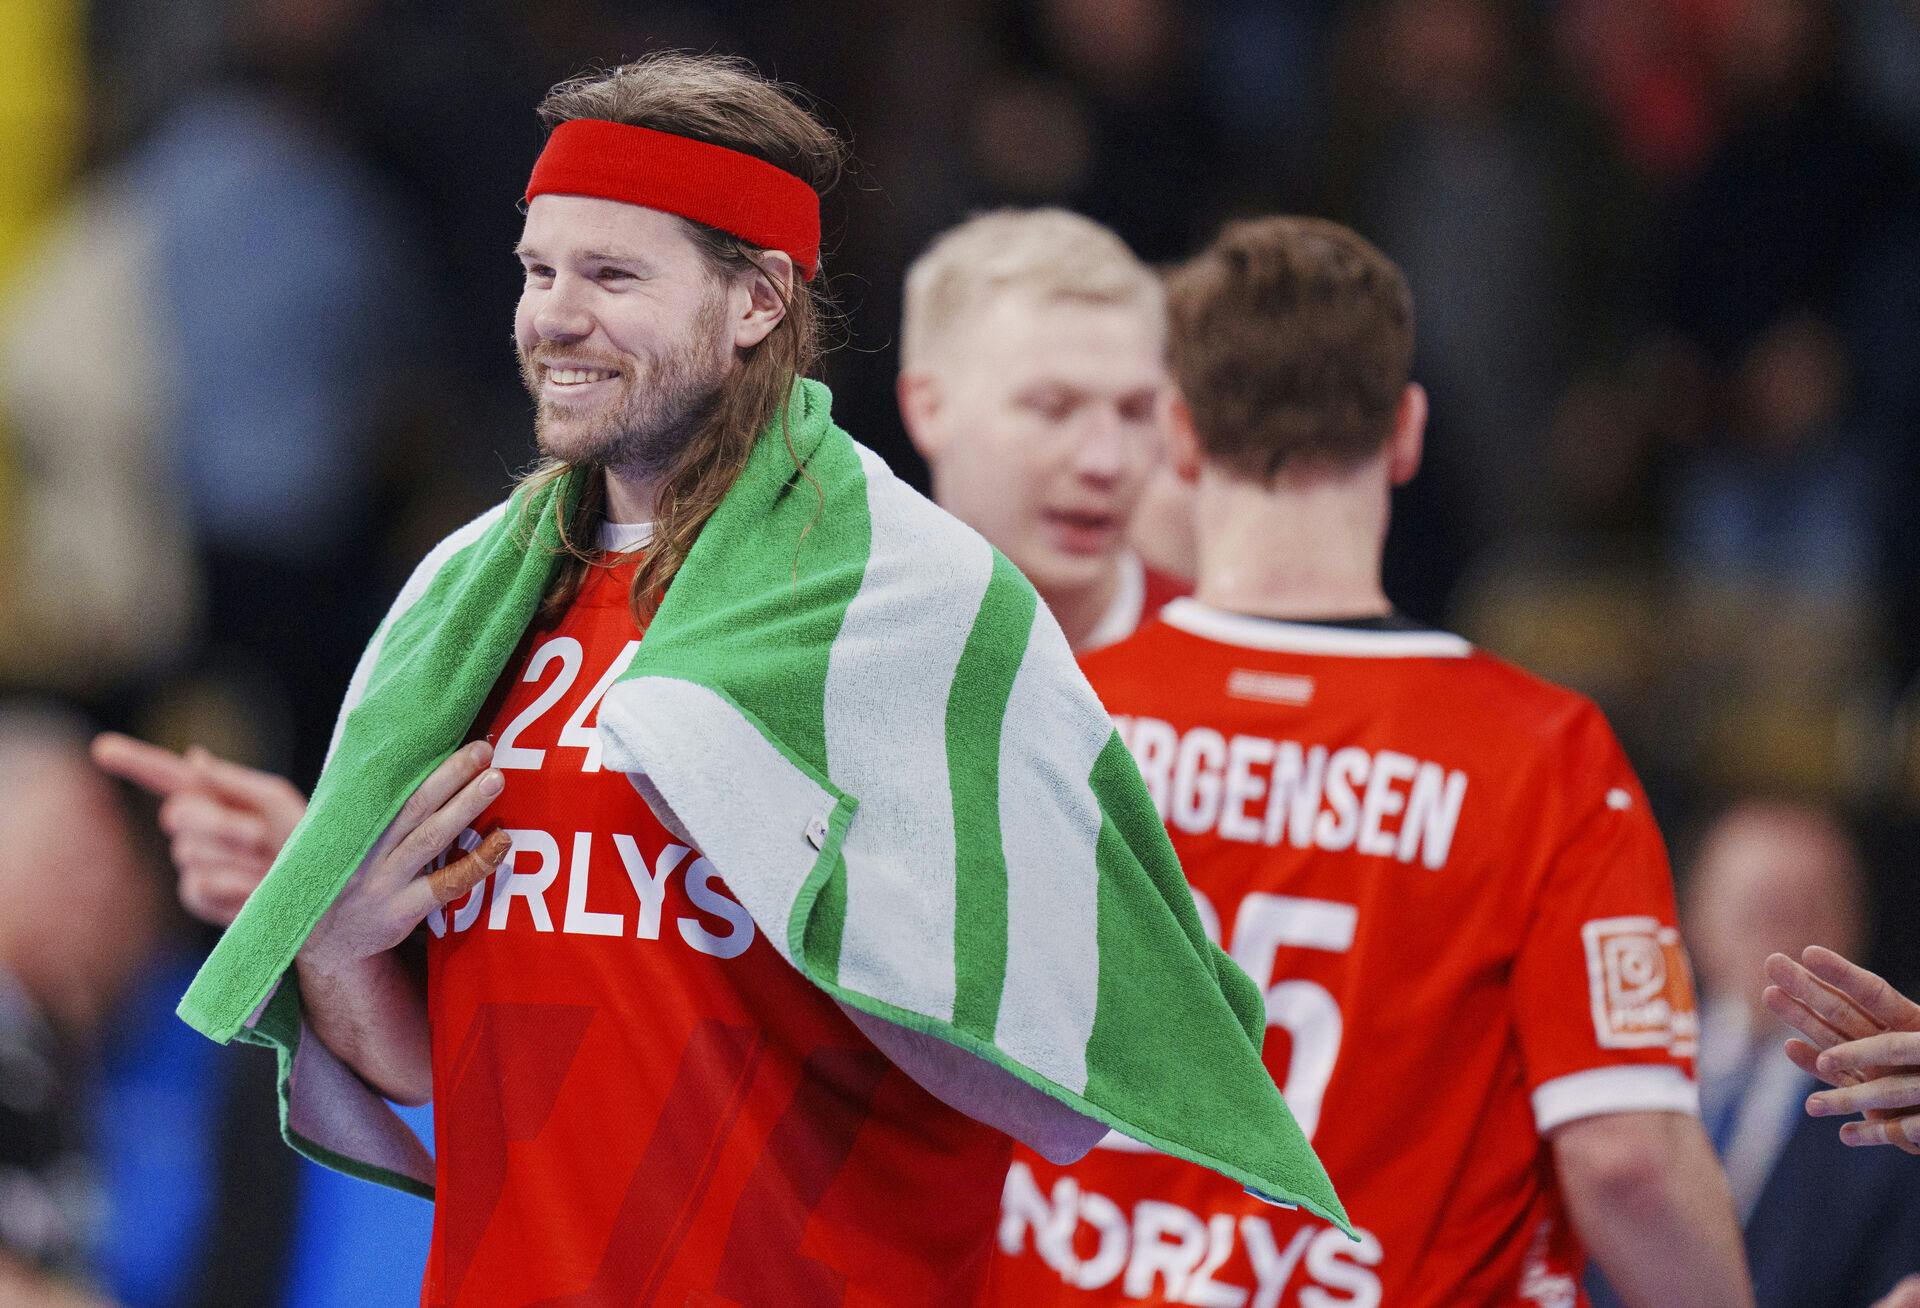 Varmen skal holdes under kampen, og det bruger Mikkel Hansen et grønt håndklæde til at gøre.